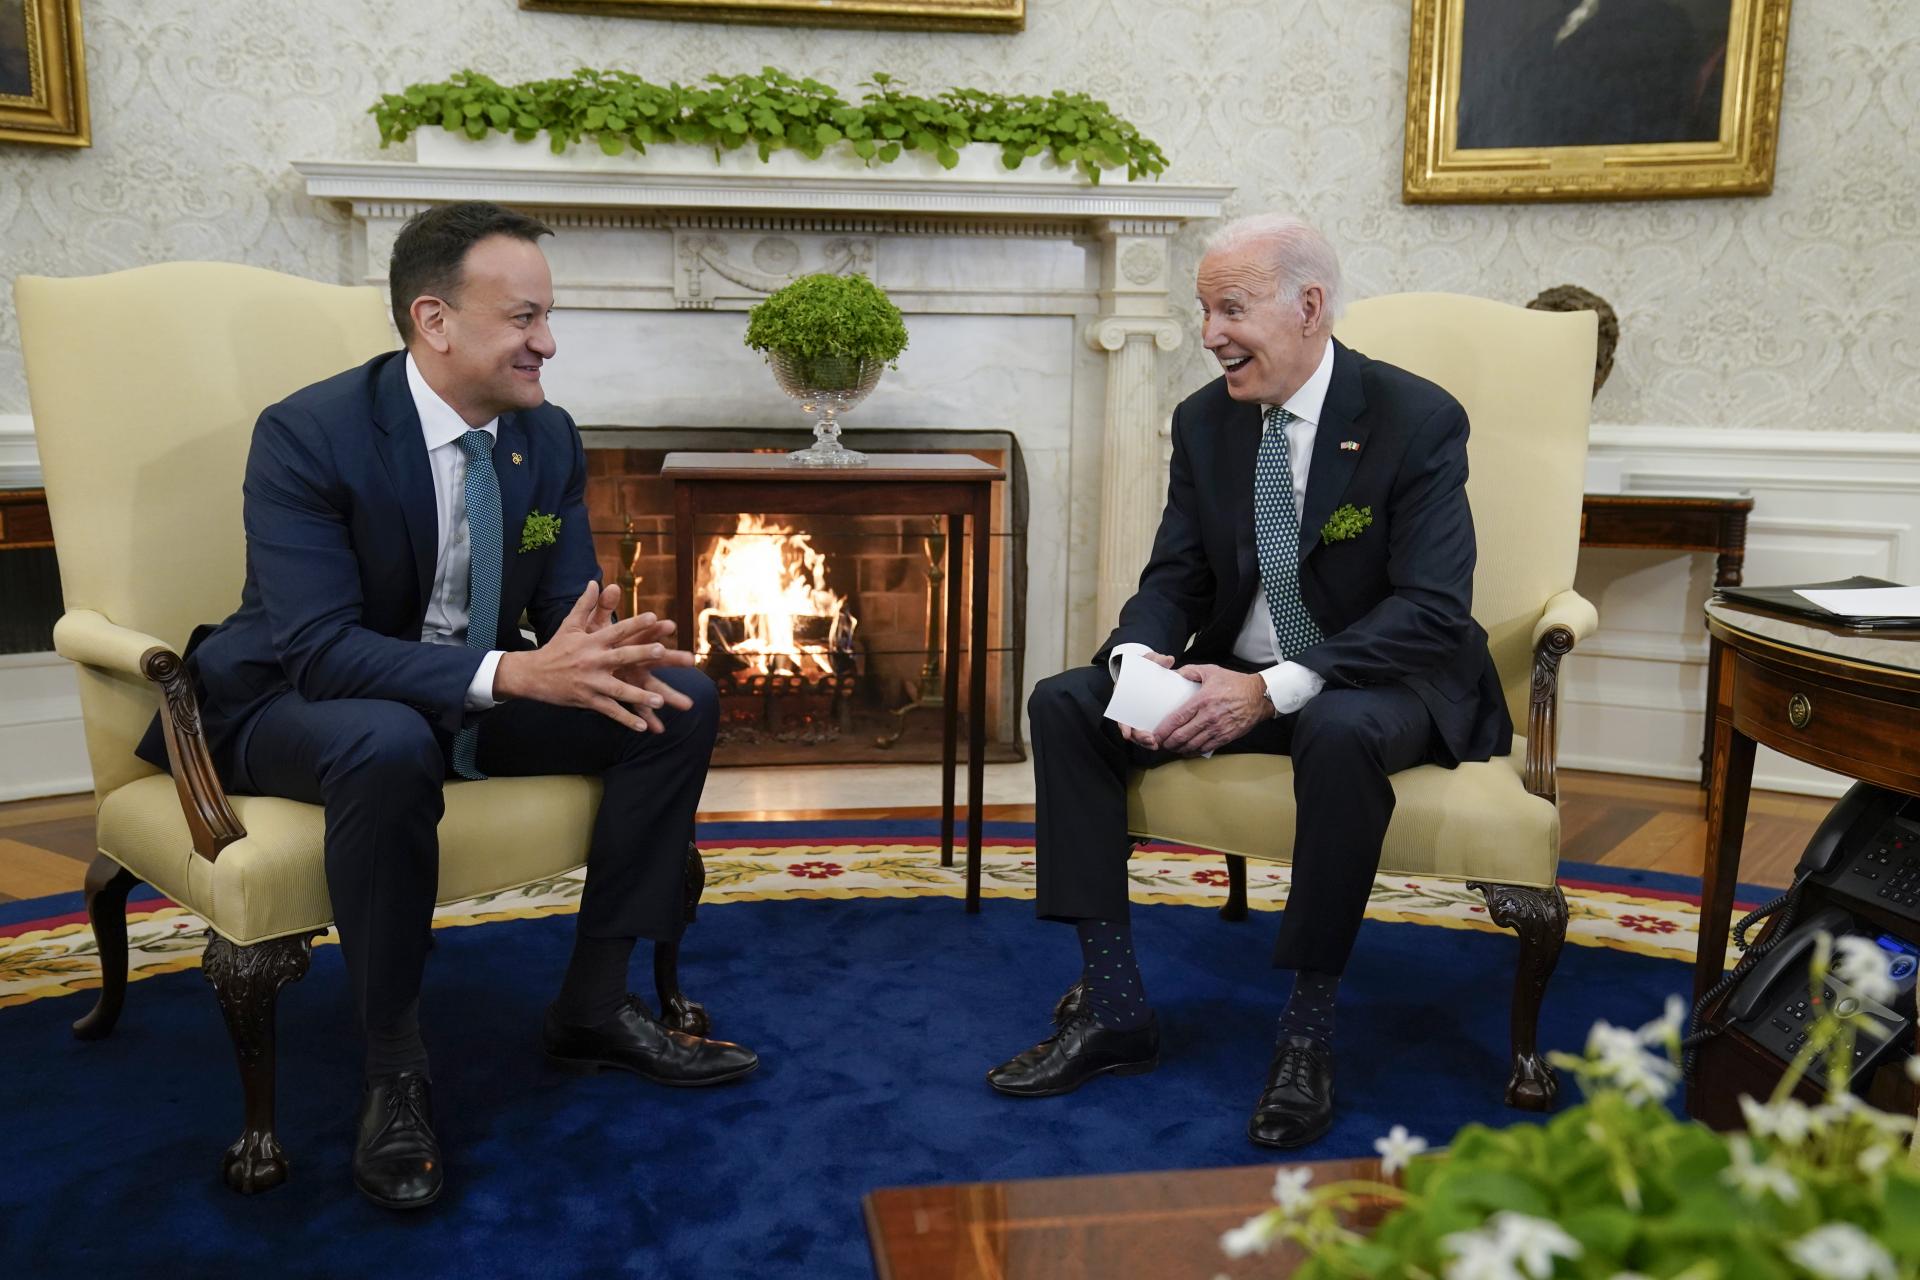 Írsko bude s verejnosťou konzultovať vojenskú neutralitu kvôli vojne na Ukrajine